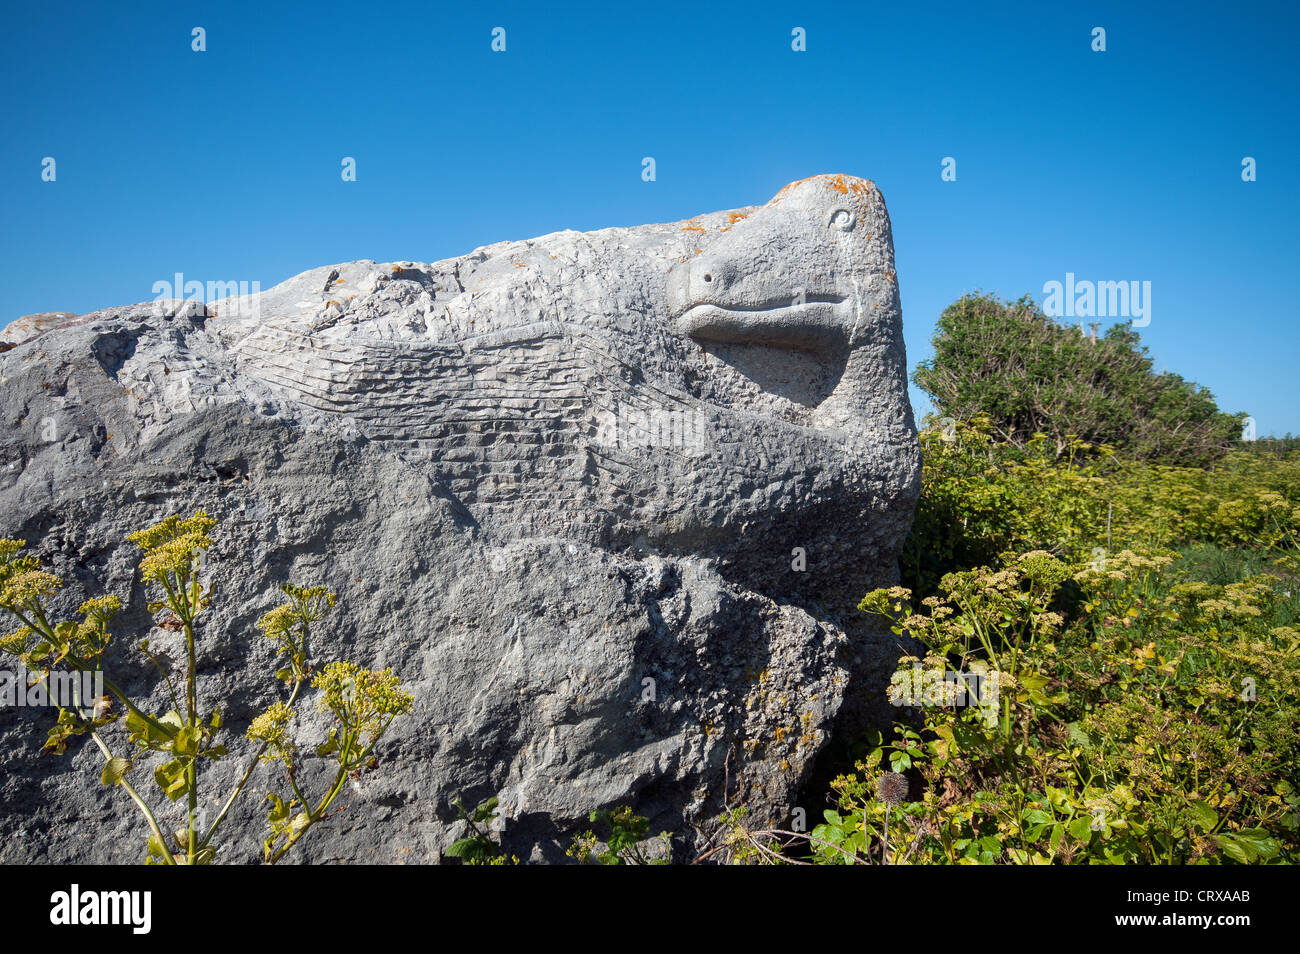 Sculpture en pierre à tout Quarry Nature Reserve et parc de sculptures, Portland, Weymouth, Dorset, England, UK Banque D'Images